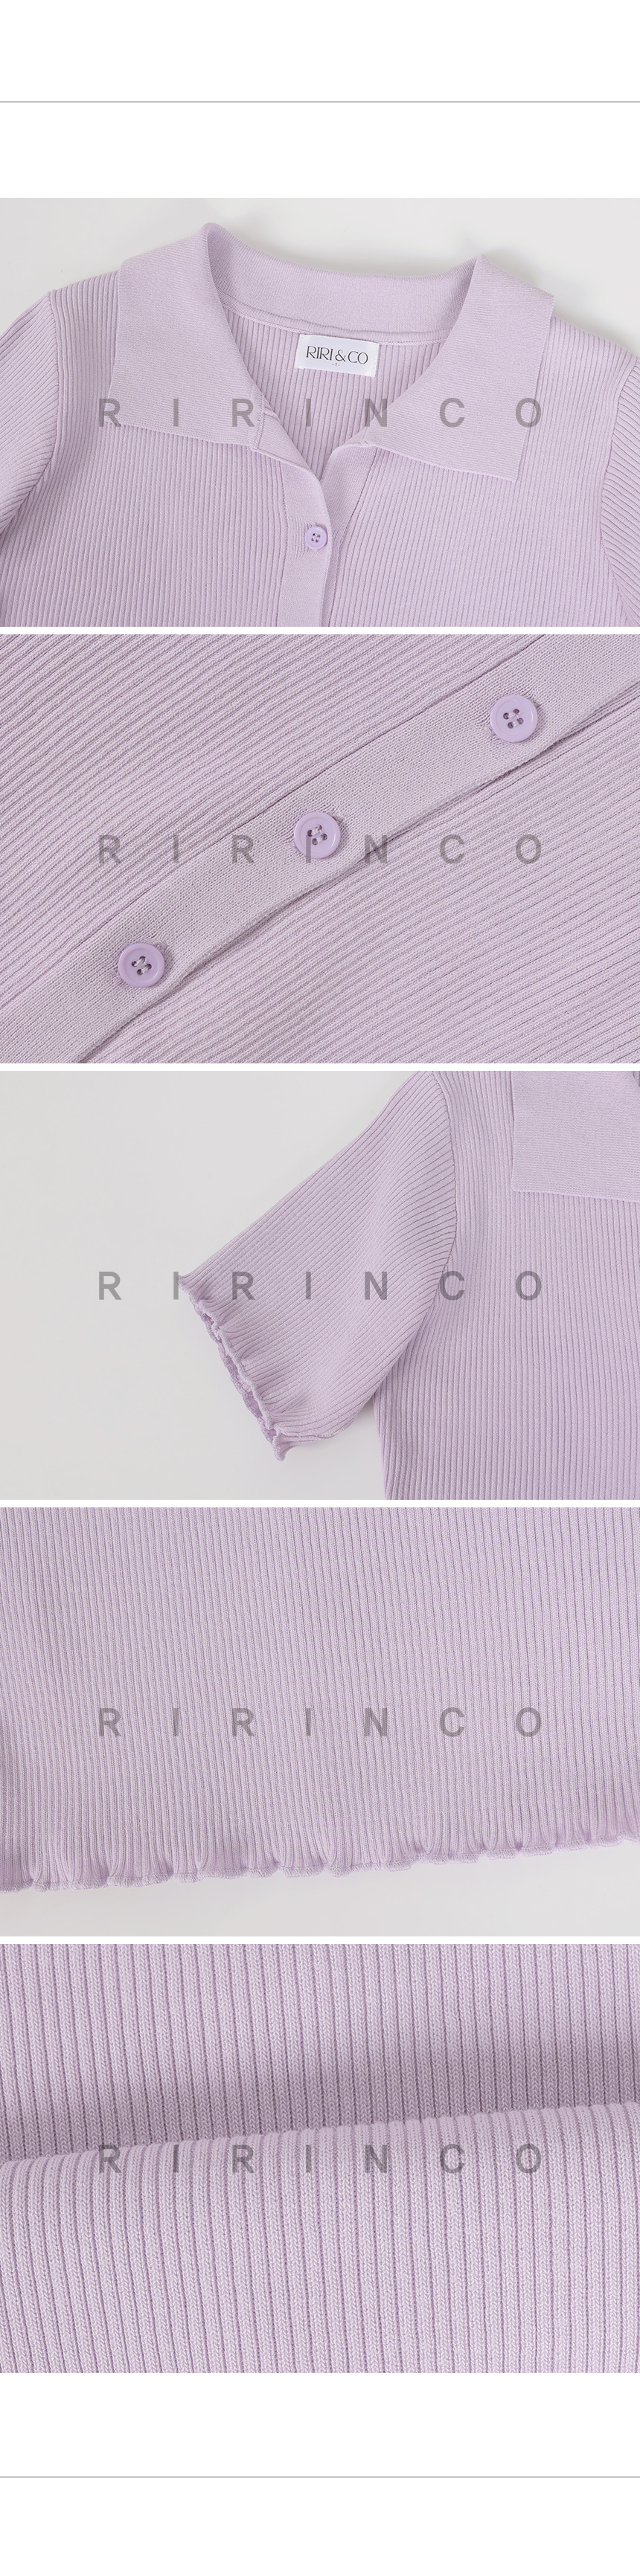 RIRINCO リブオープンカラーセミクロップド丈半袖ニット